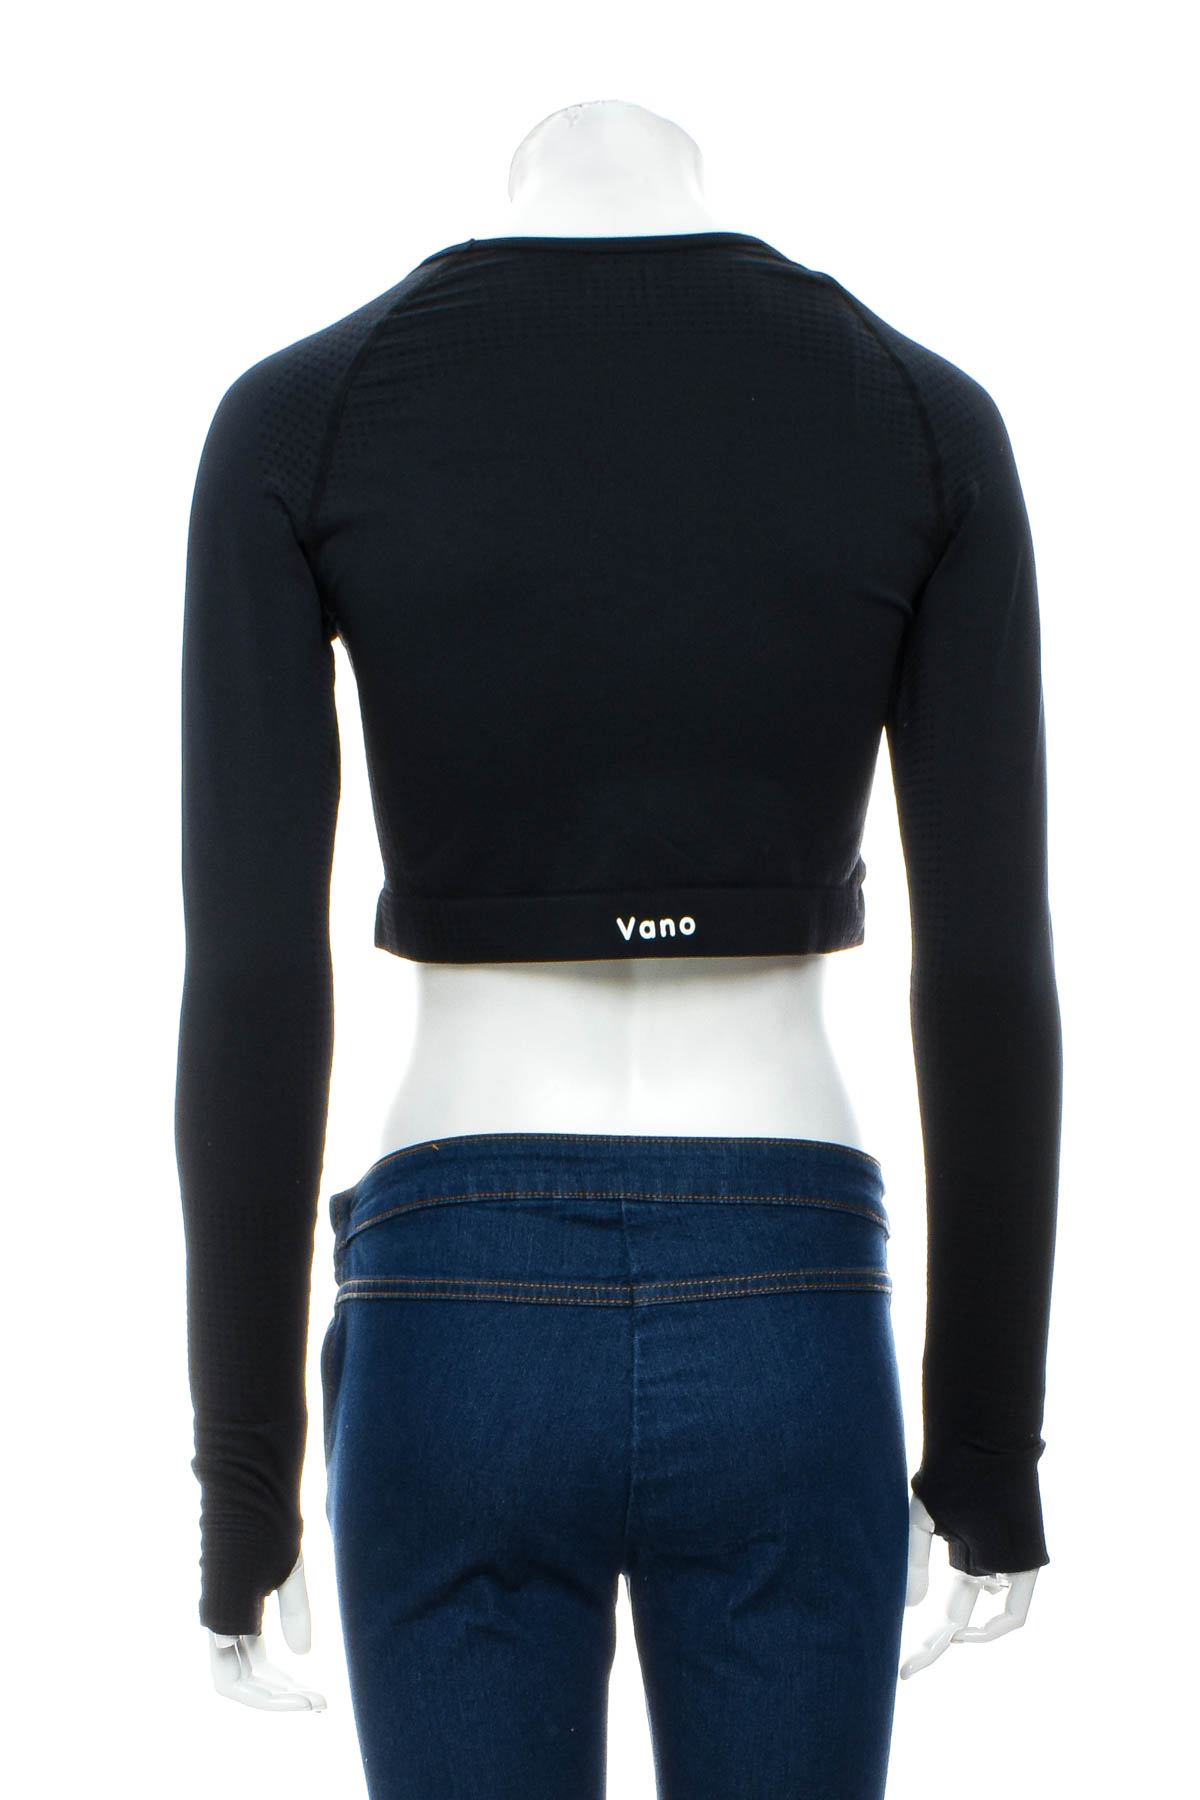 Γυναικεία αθλητική μπλούζα - VANO Wear - 1